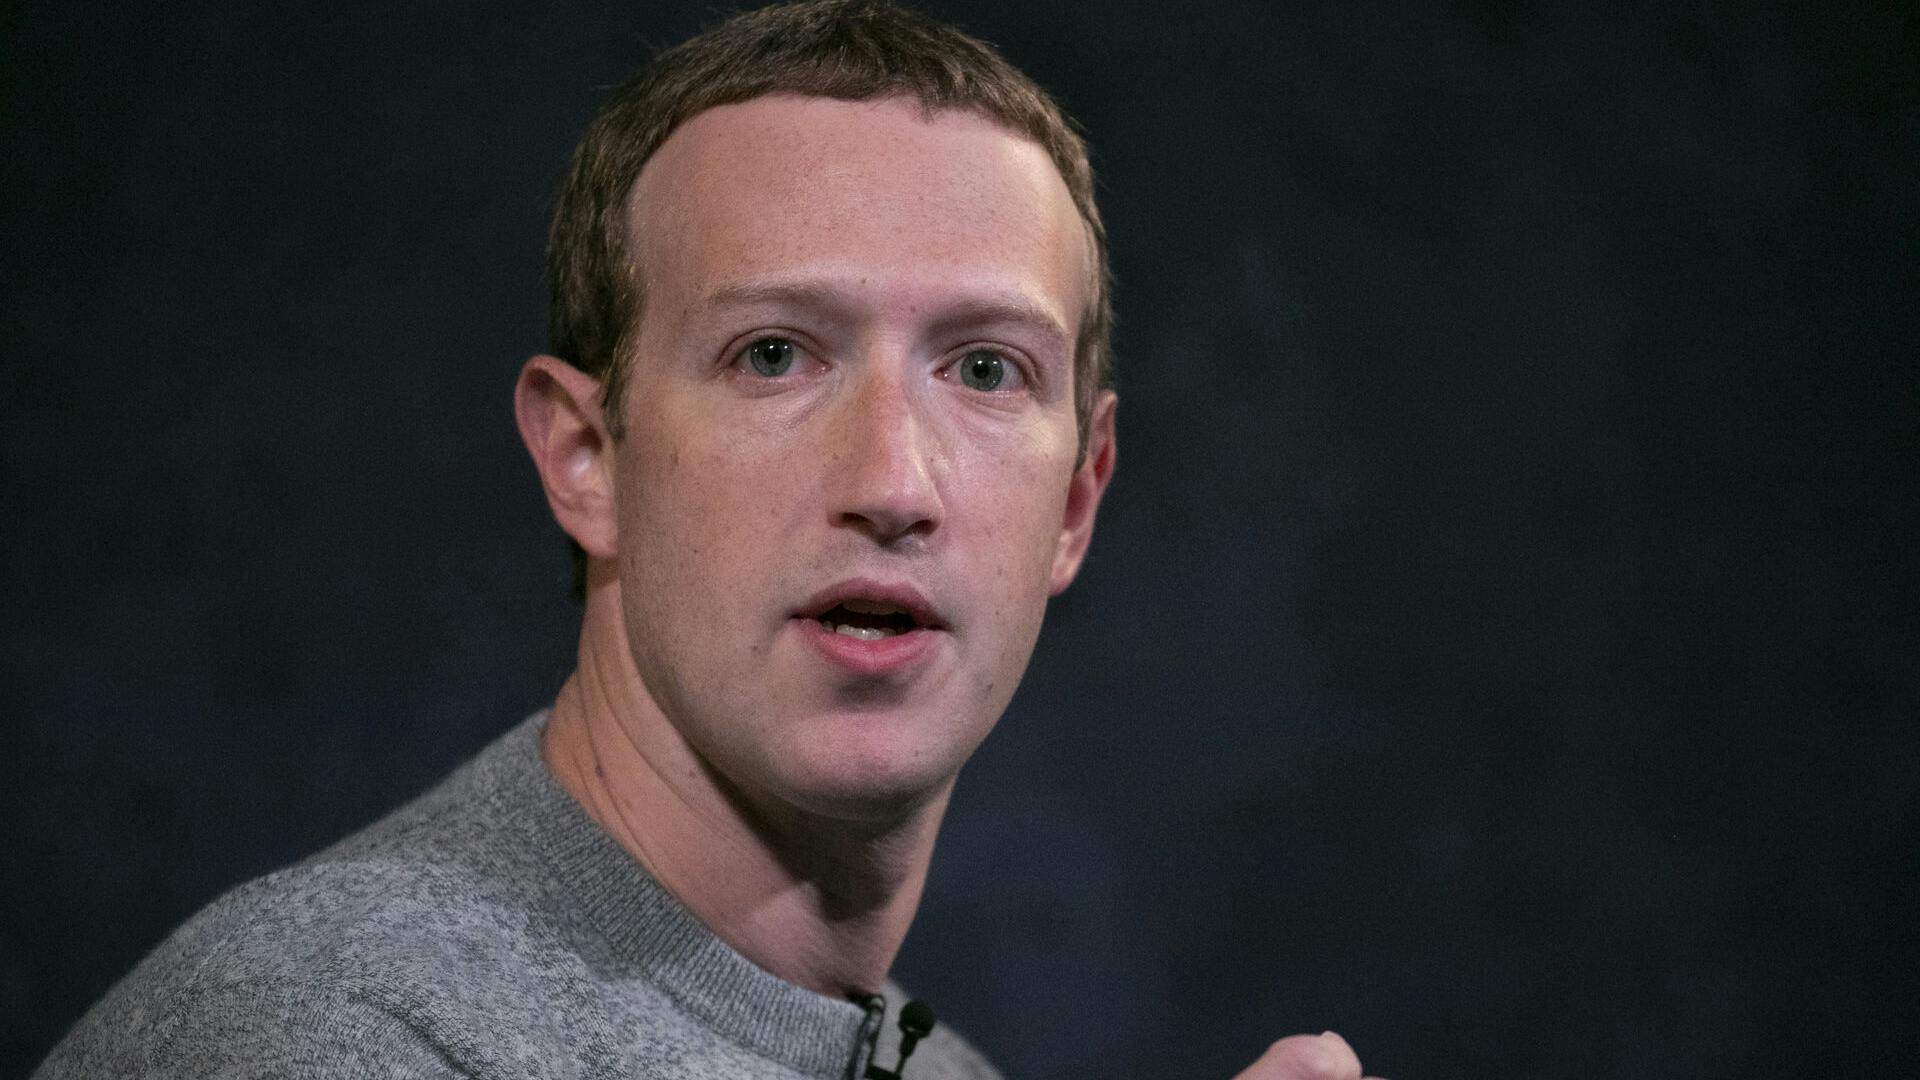 Mark Zuckerberg er 39 år og har været med til at grundlægge blandt andet Facebook.